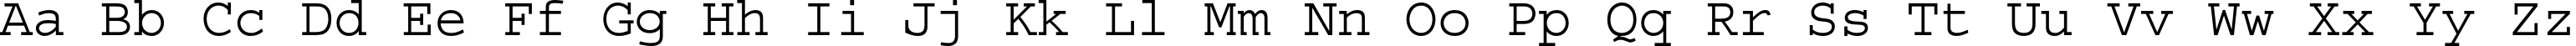 Пример написания английского алфавита шрифтом Courier Std Medium